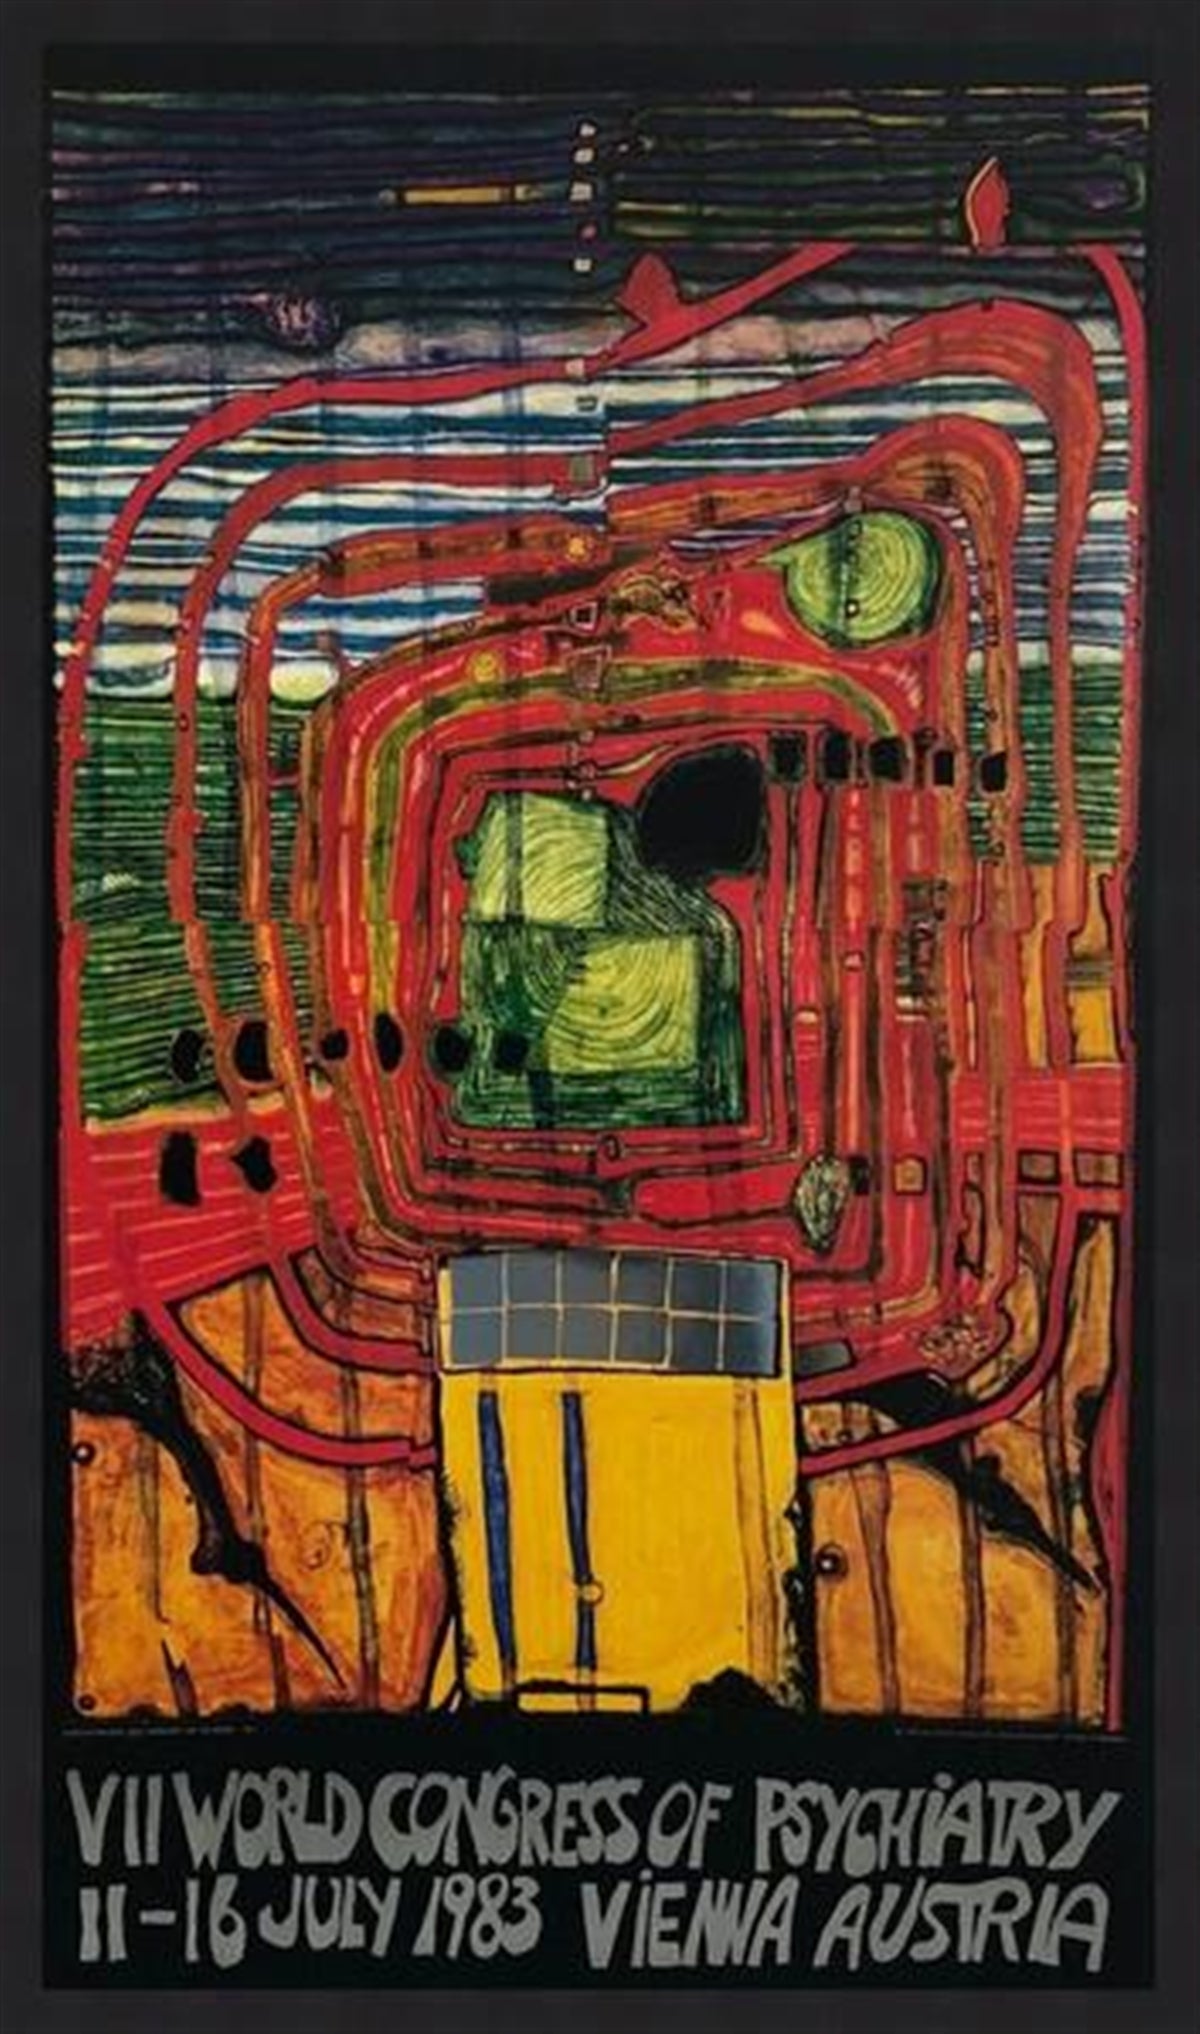 Friedensreich Hundertwasser "VII World Congress of Psychiatry"